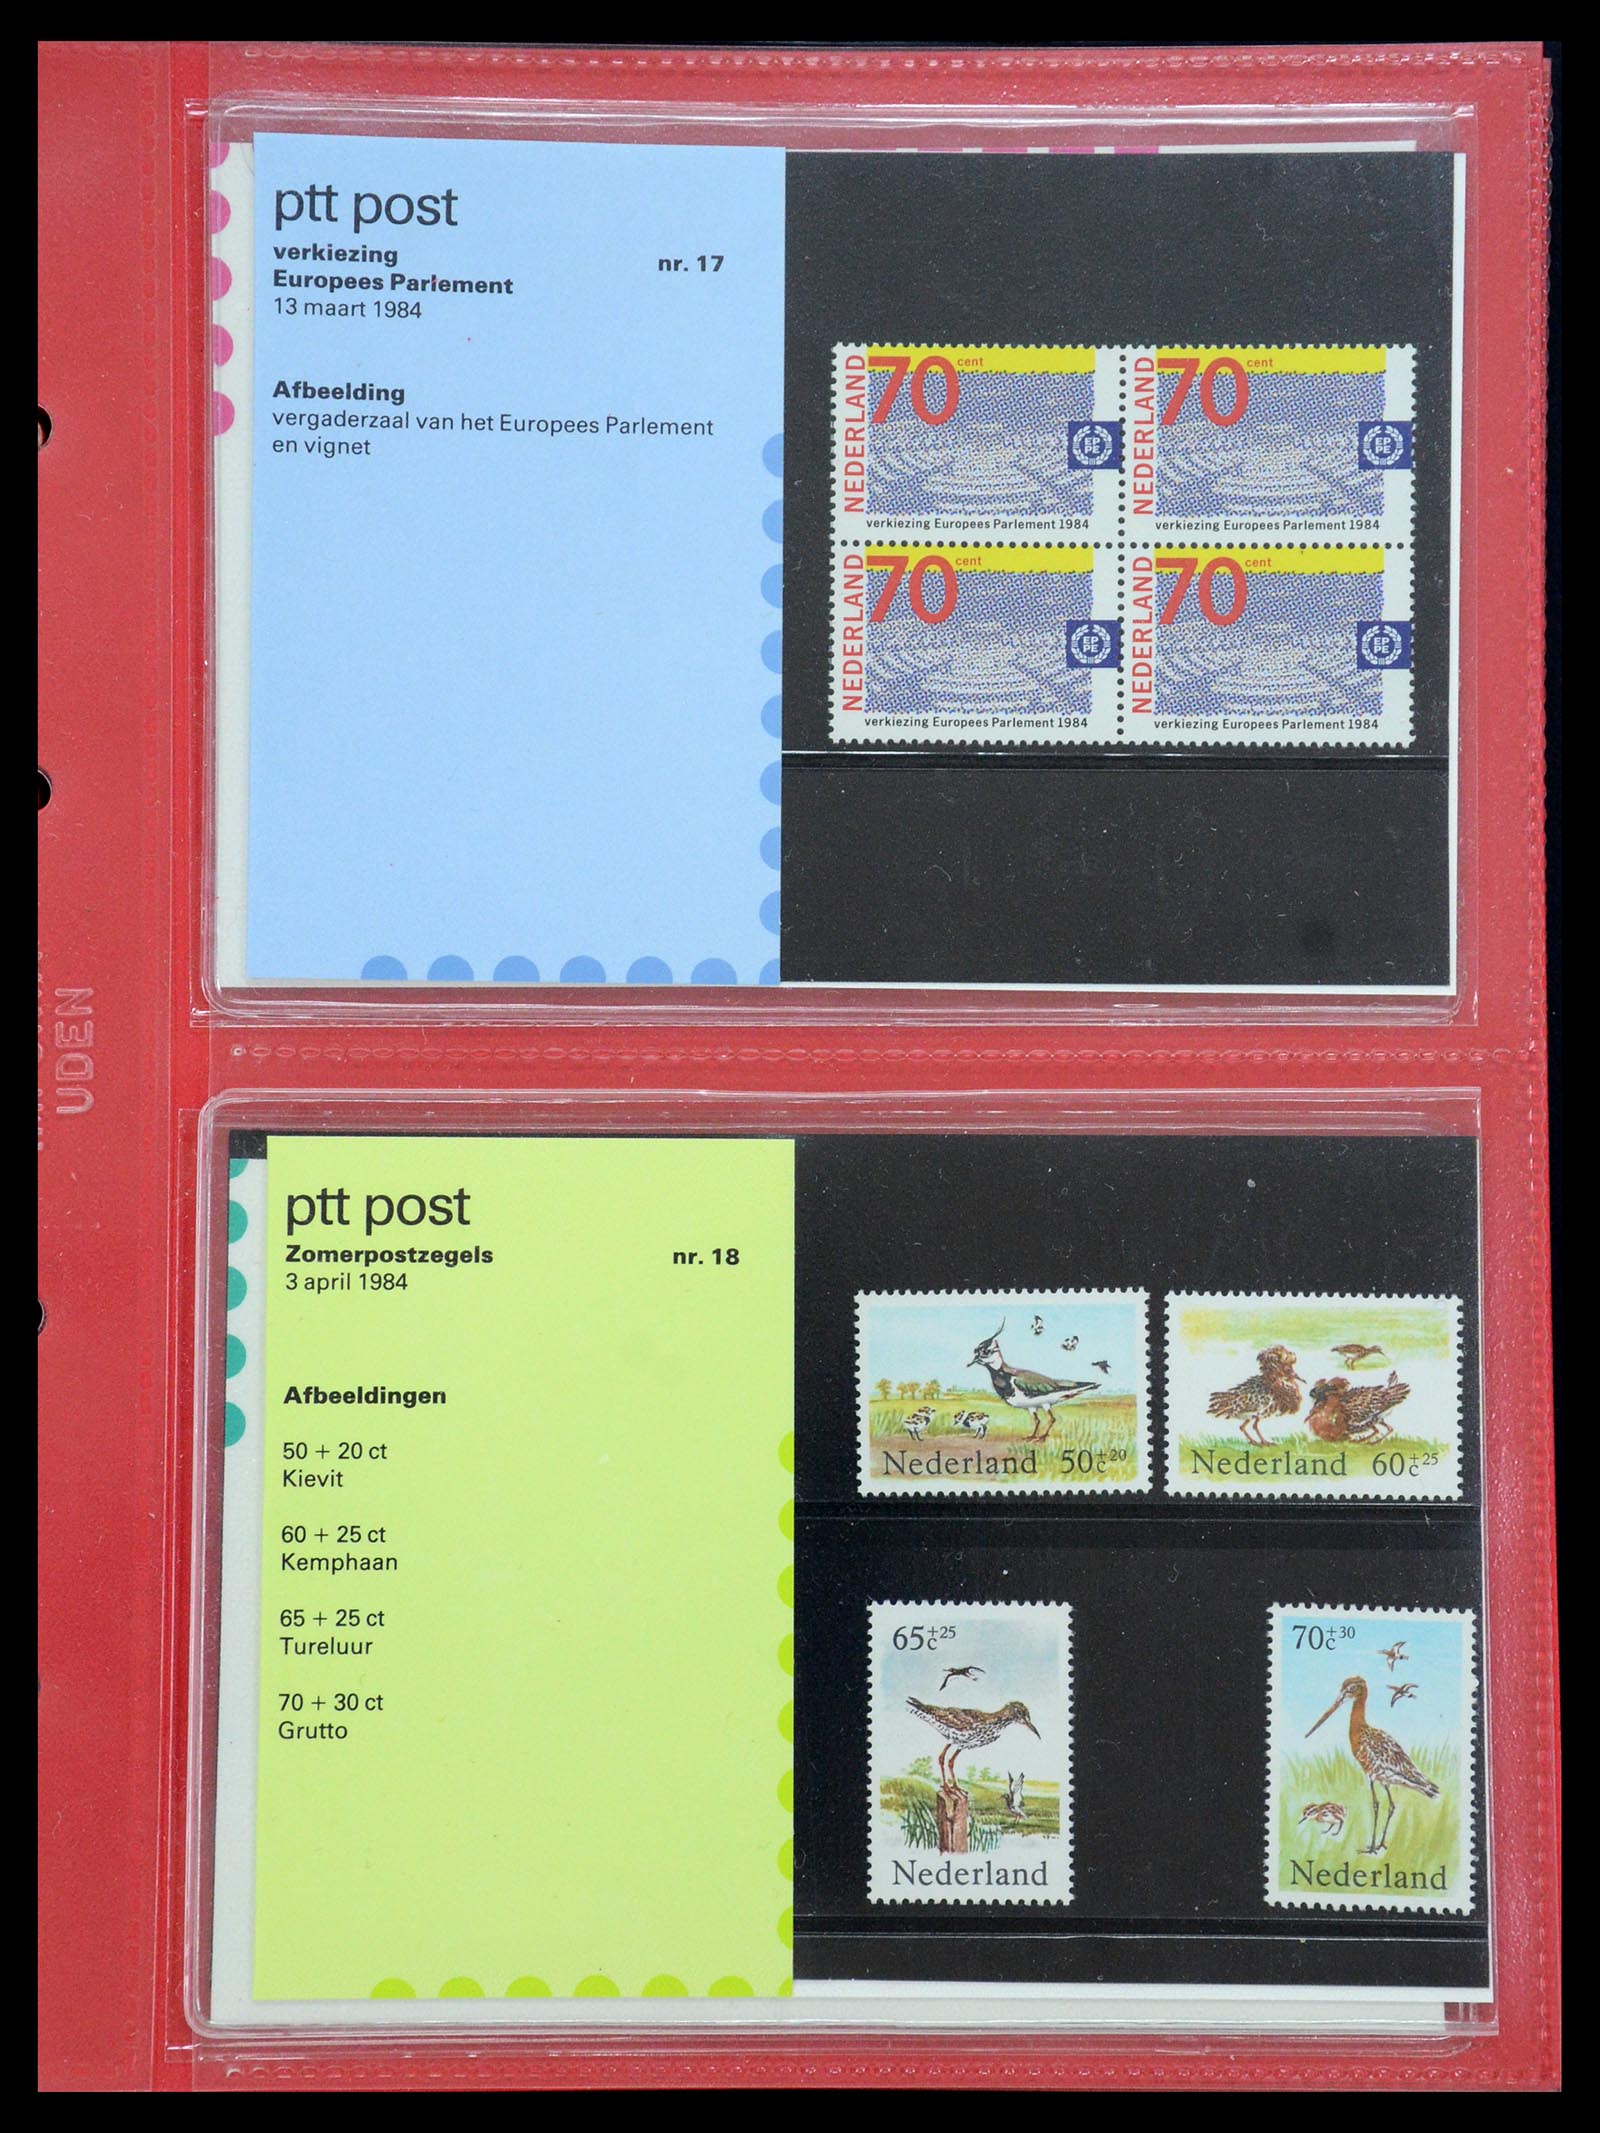 35692 009 - Stamp Collection 35692 Netherlands presentation packs 1982-2021!!